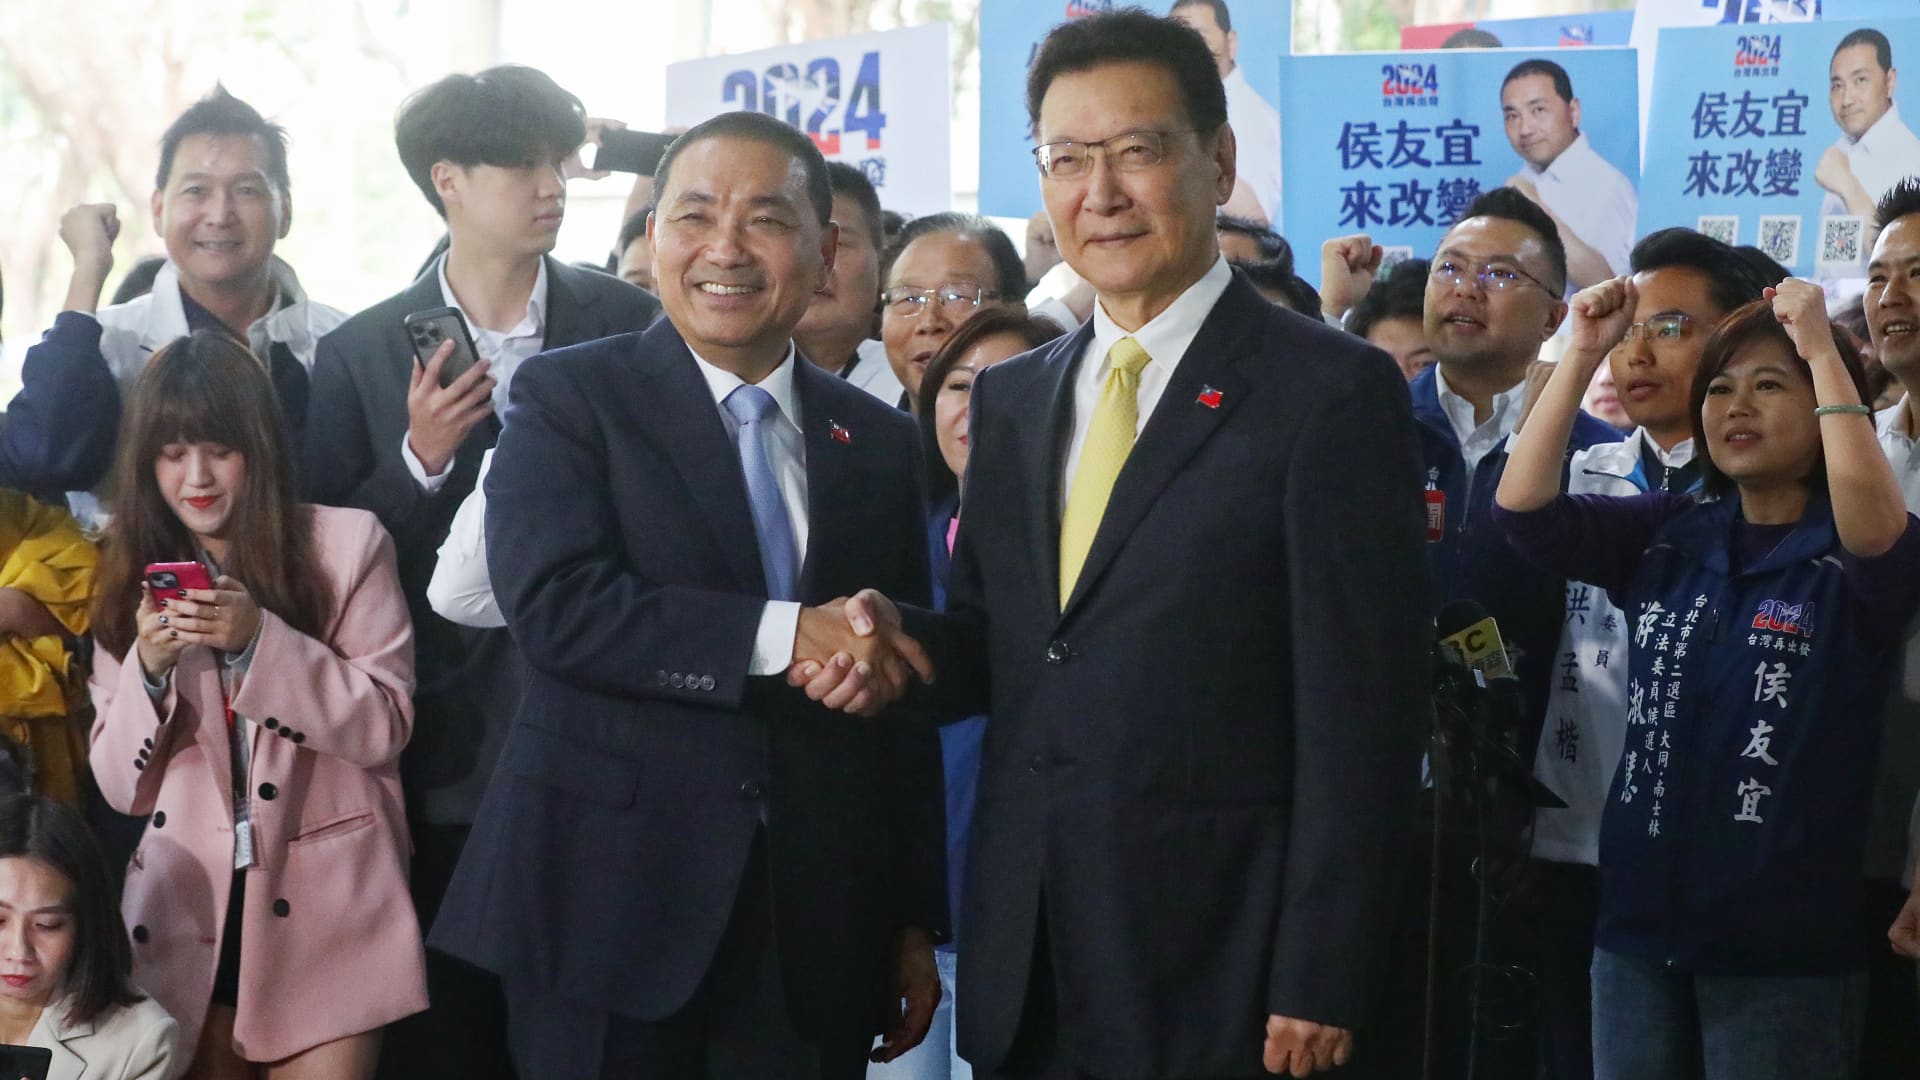 11 月 24 日星期五，国民党总统候选人、新北市市长胡越（左）及其副手顾树功抵达台湾台北市中央选举委员会办公室进行候选人登记。  2023 年。